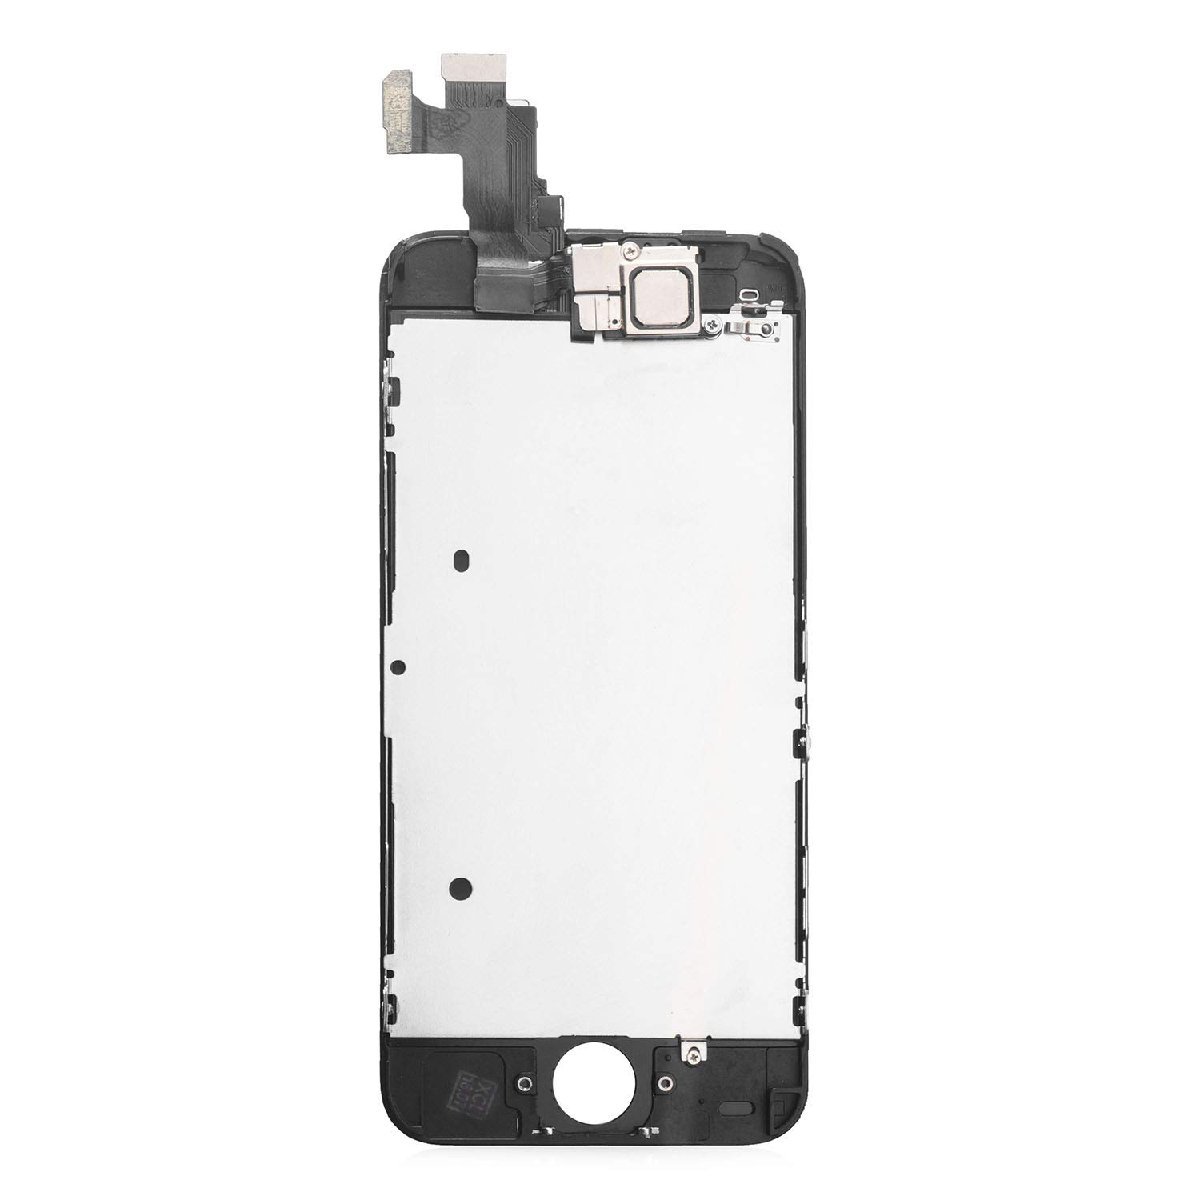  доставка бесплатно ★SZM iPhone 5C  сенсорный экран   ремонт  для замены  передний  панель  комплект   LCD  динамик + передний  камера  включено  ( черный )